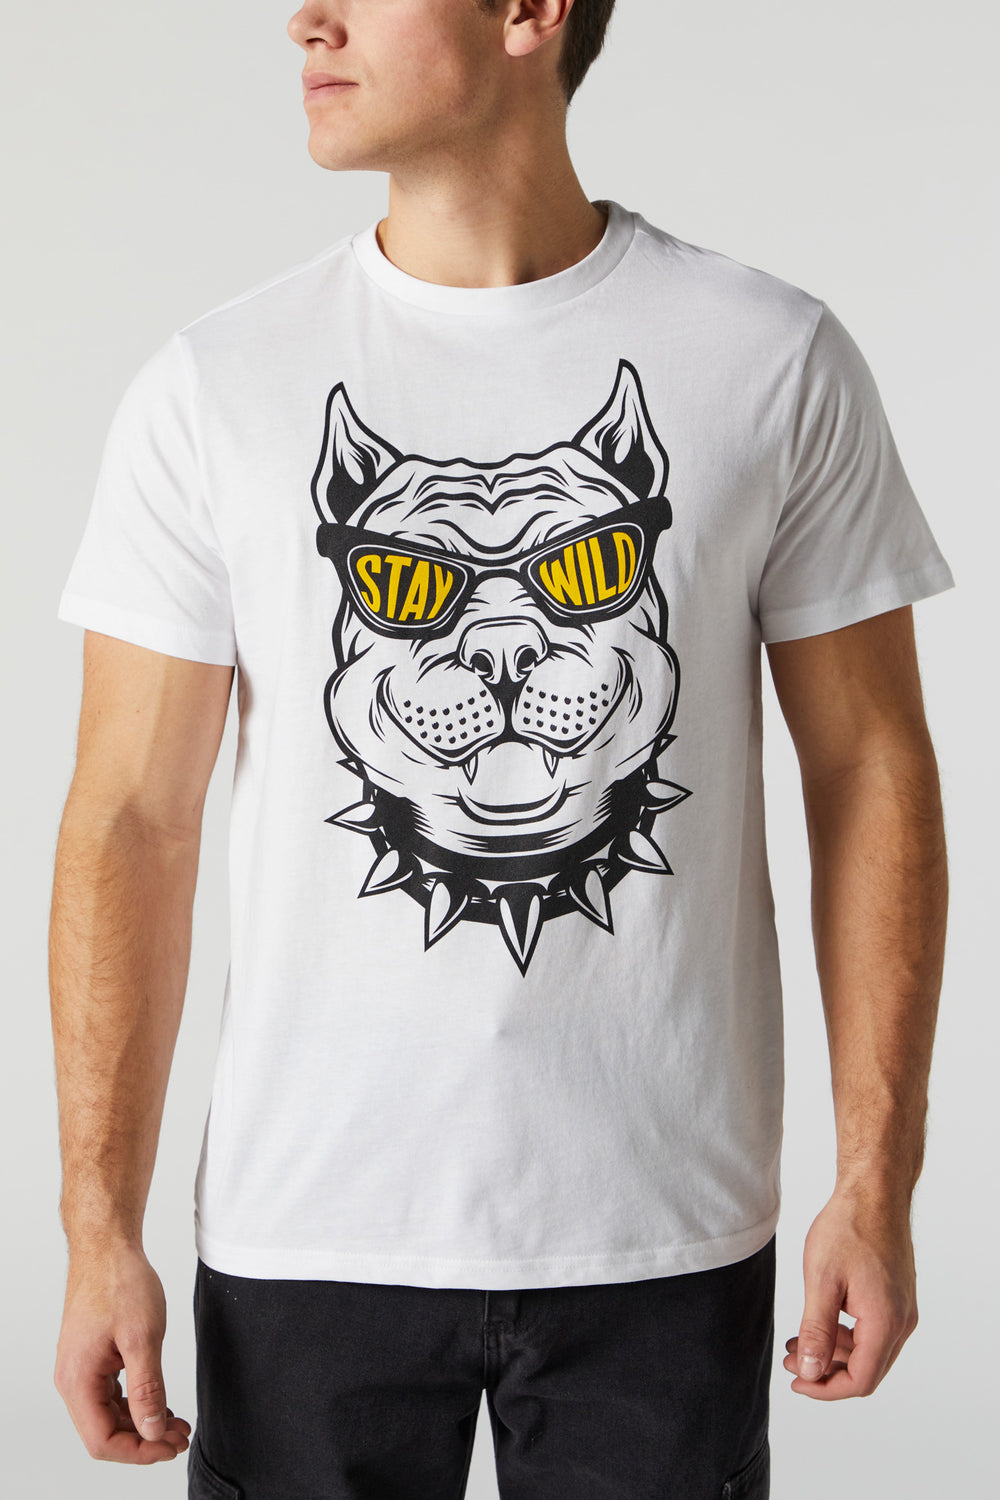 Stay Wild Graphic T-Shirt Stay Wild Graphic T-Shirt 1